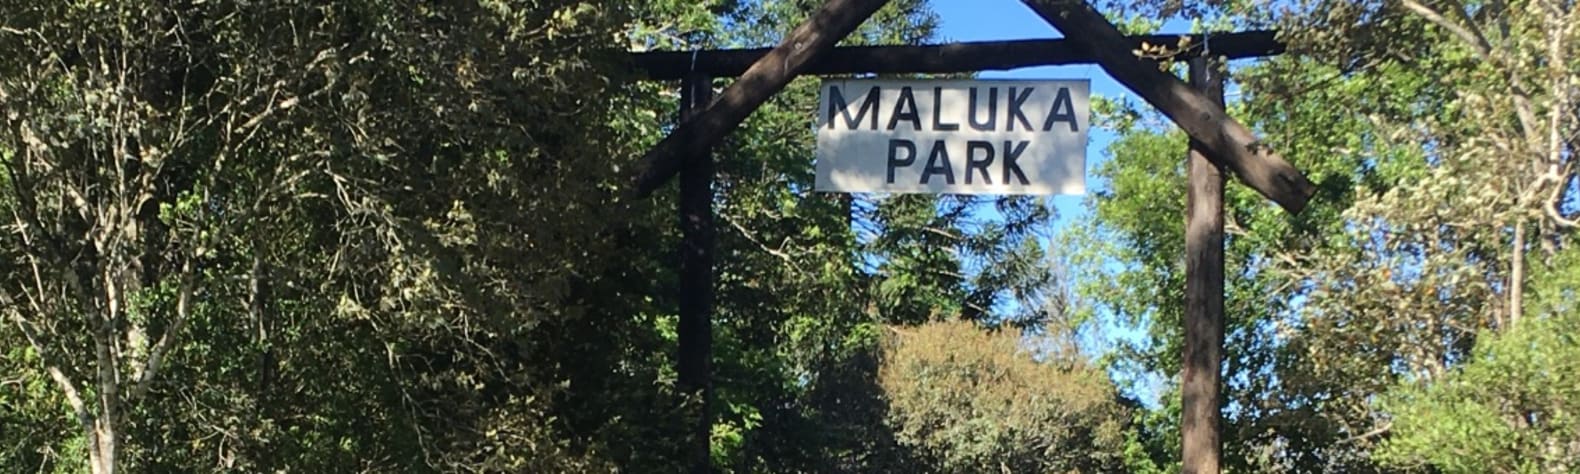 Maluka Park